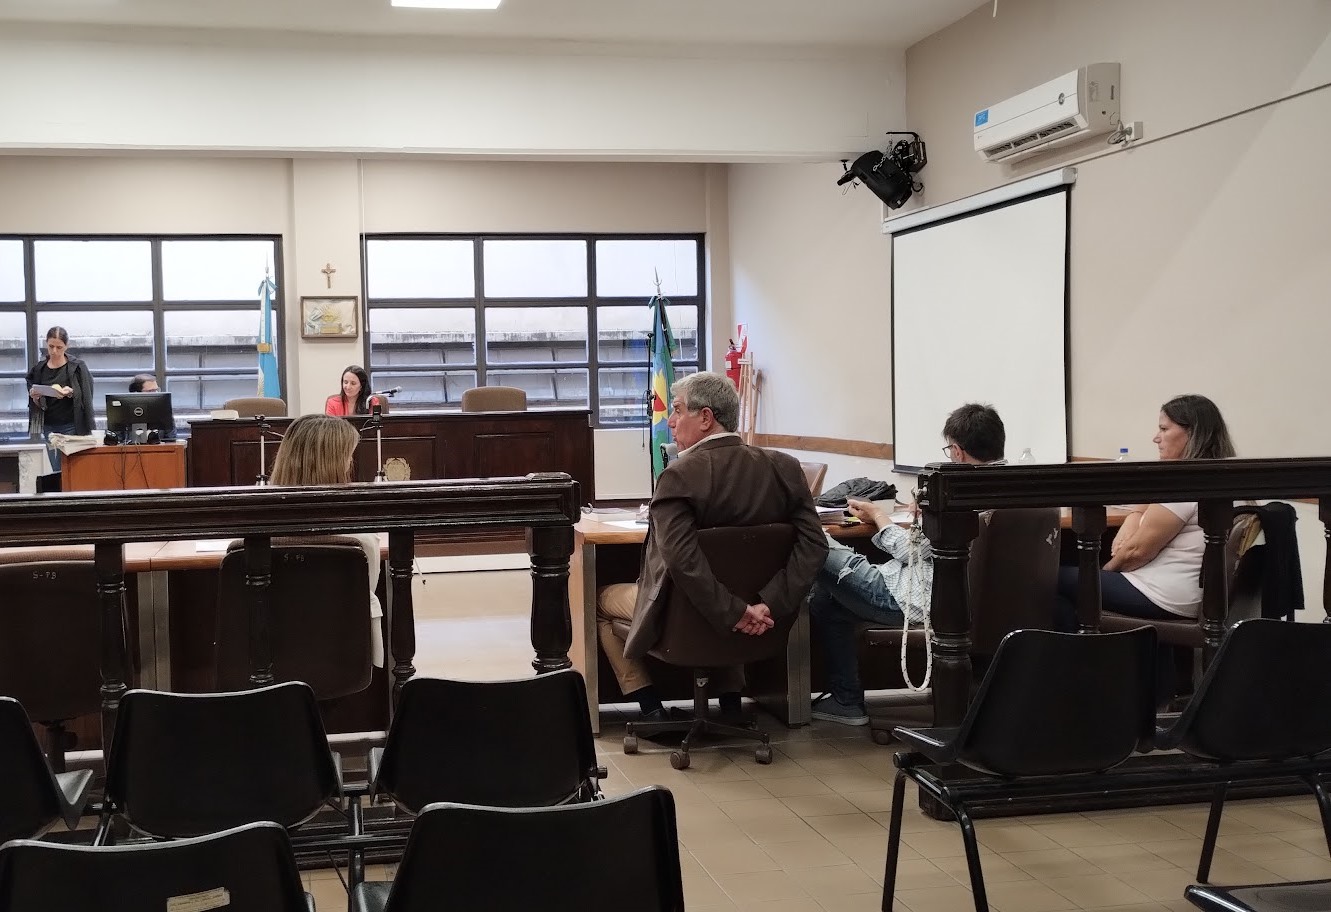 Juicio por Jurados en Quilmes: por unanimidad declararon culpable a funcionaria judicial que cultivaba y vendía drogas en su casa